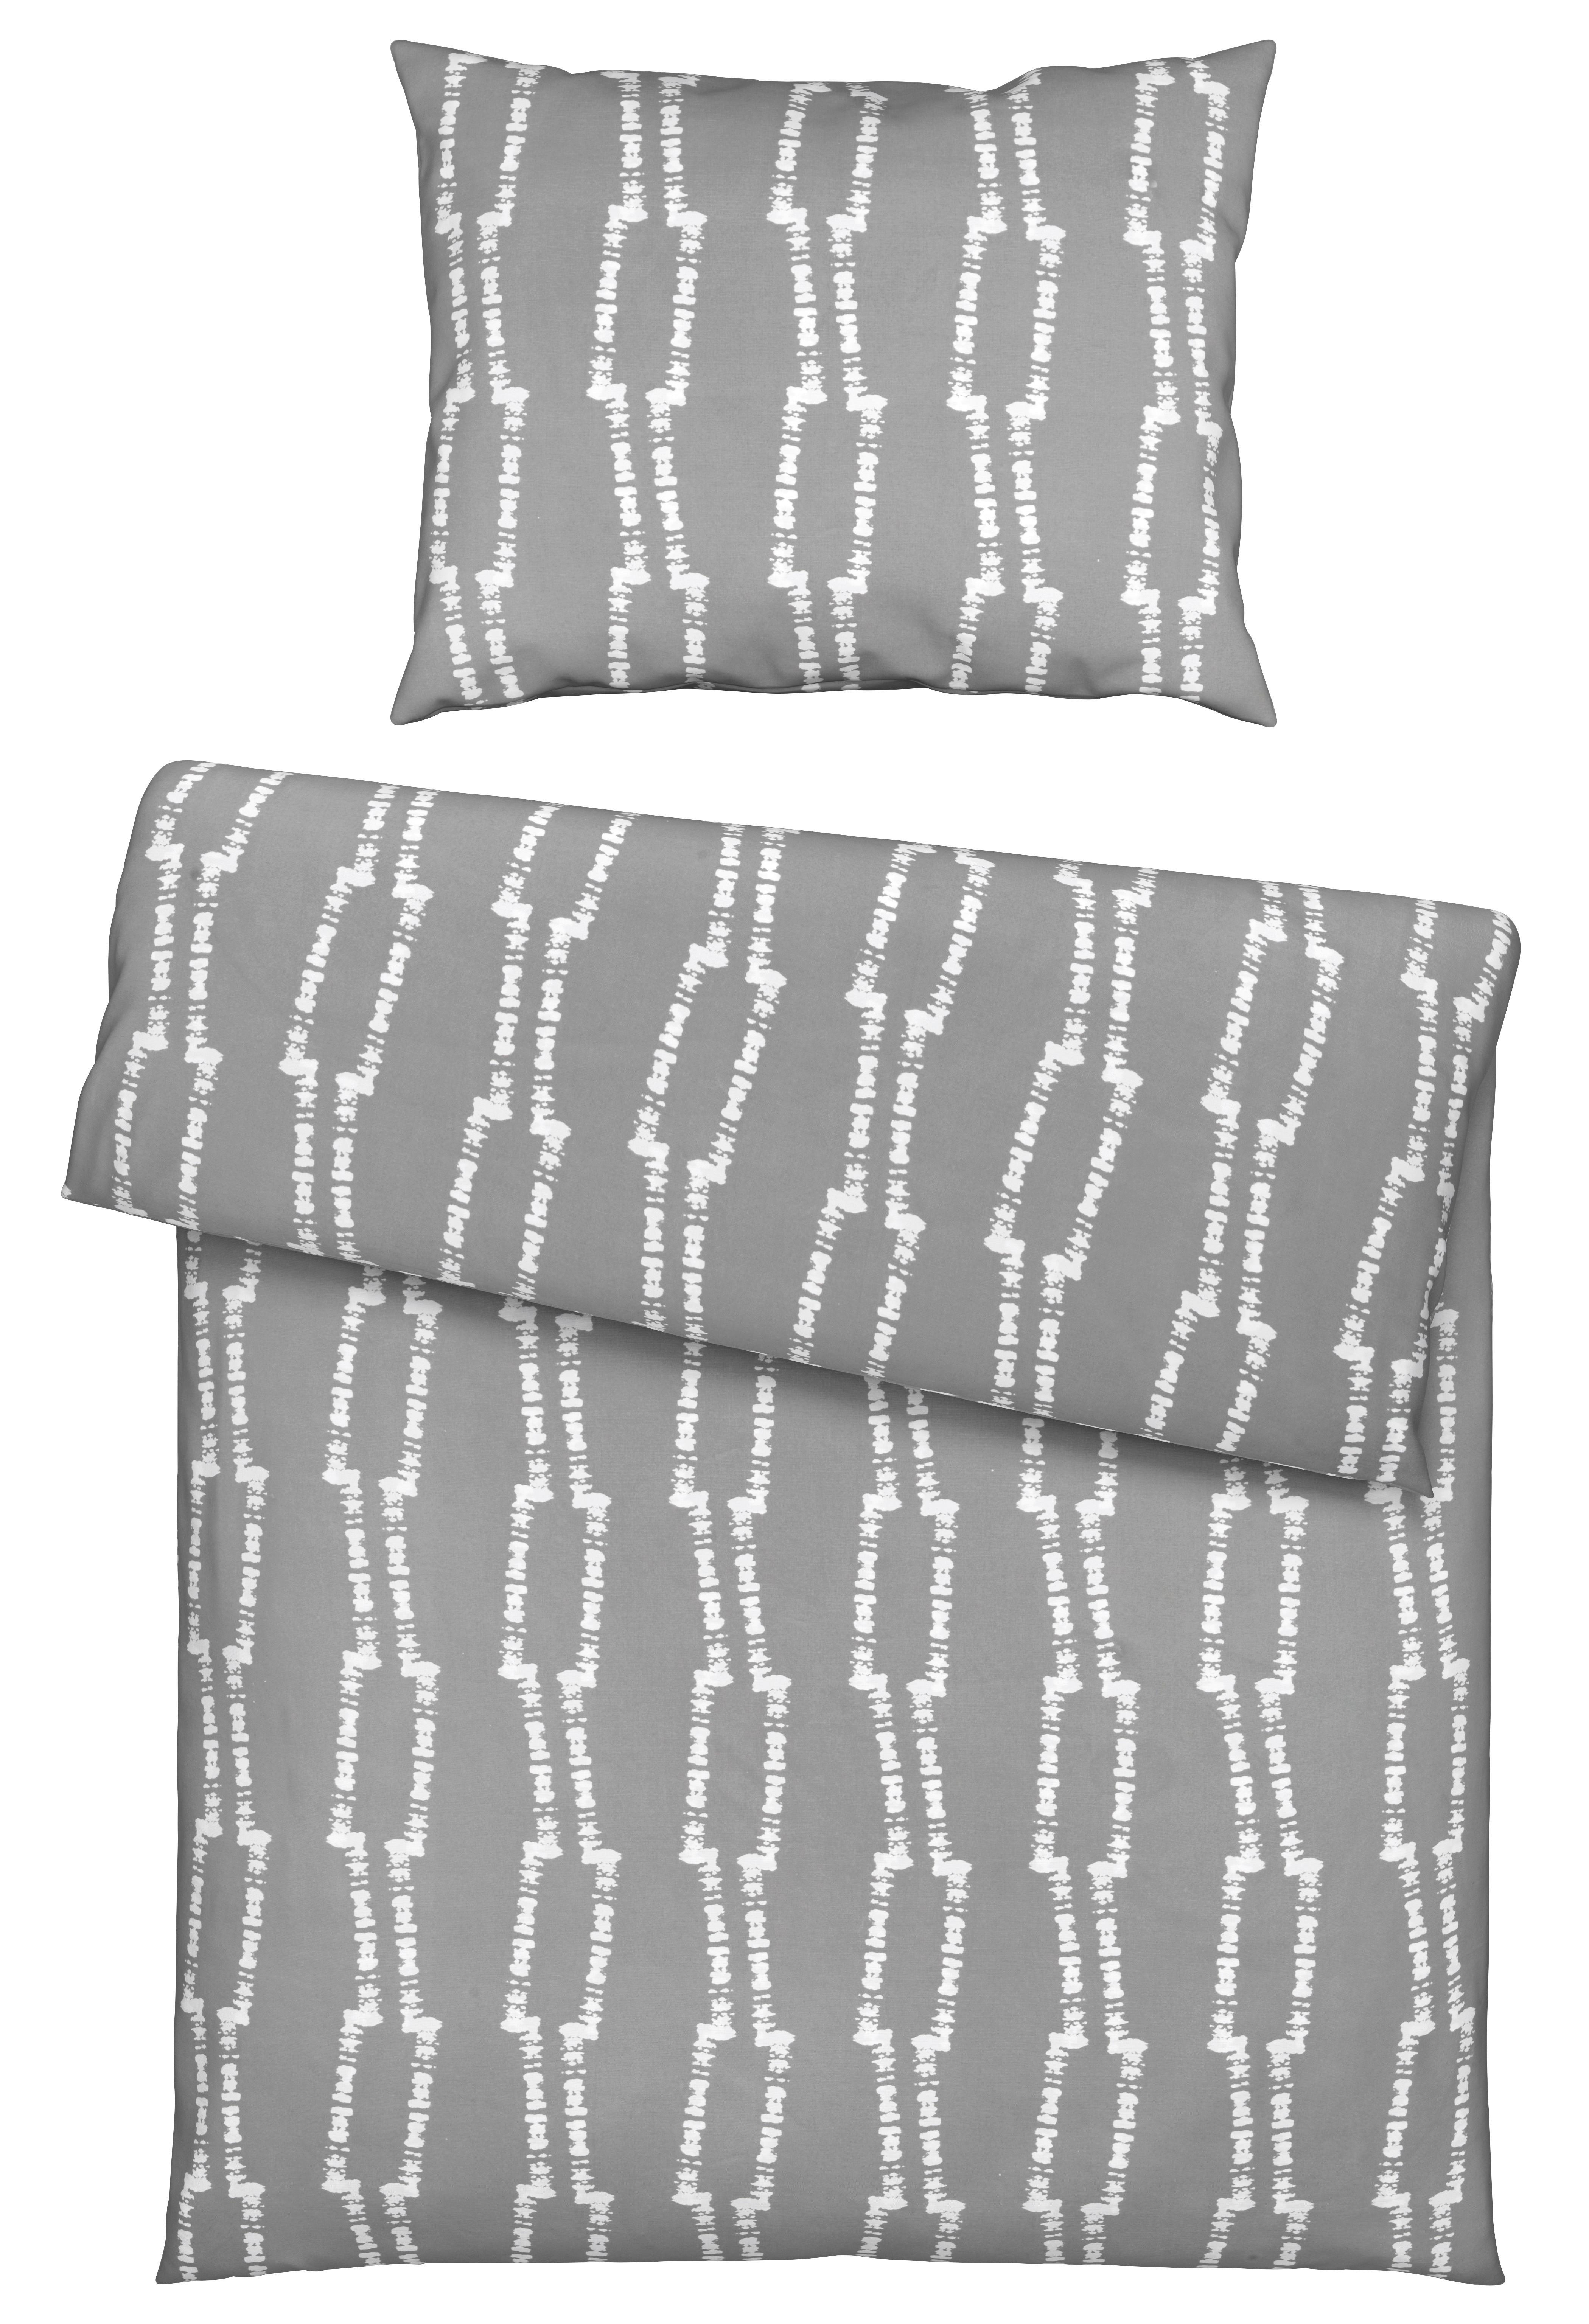 Povlečení Linus, 70/90 140/200cm - šedá, Moderní, textil (140/200cm) - Modern Living